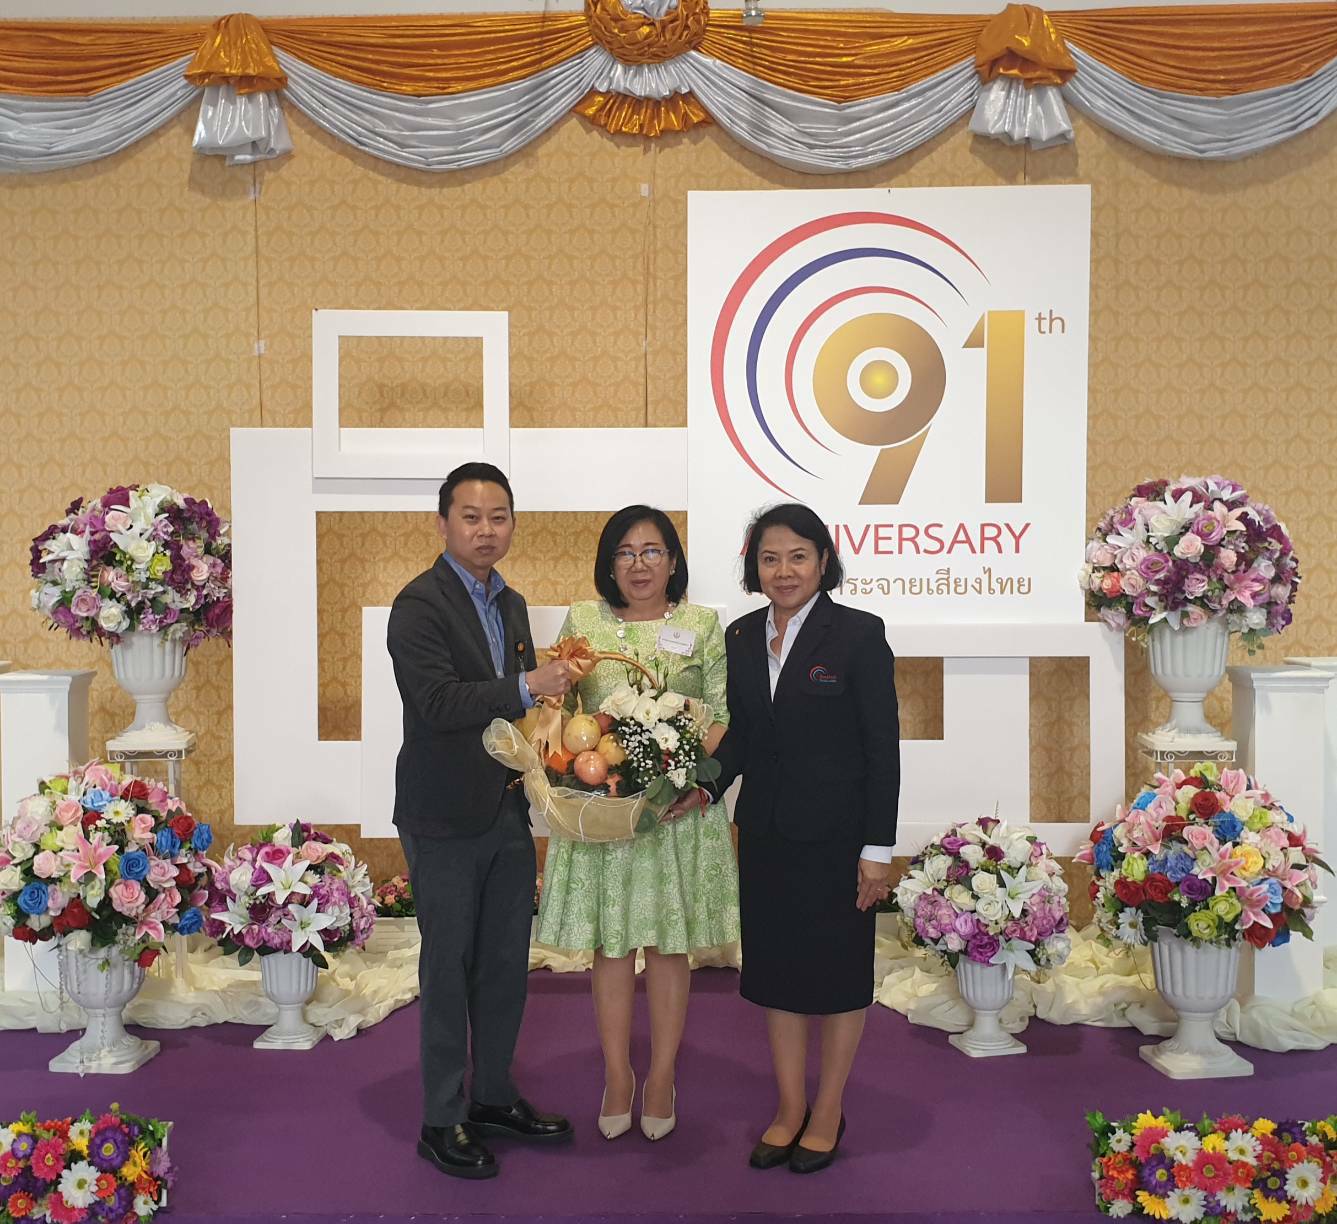 นายสาธิต วงศ์อนันต์นนท์ ผู้อำนวยการสำนักประชาสัมพันธ์ มอบกระเช้าดอกไม้แสดงความยินดีเนื่องในโอกาสวันคล้ายวันก่อตั้งสถานีวิทยุกระจายเสียงแห่งประเทศไทย ครบรอบ 91 ปี